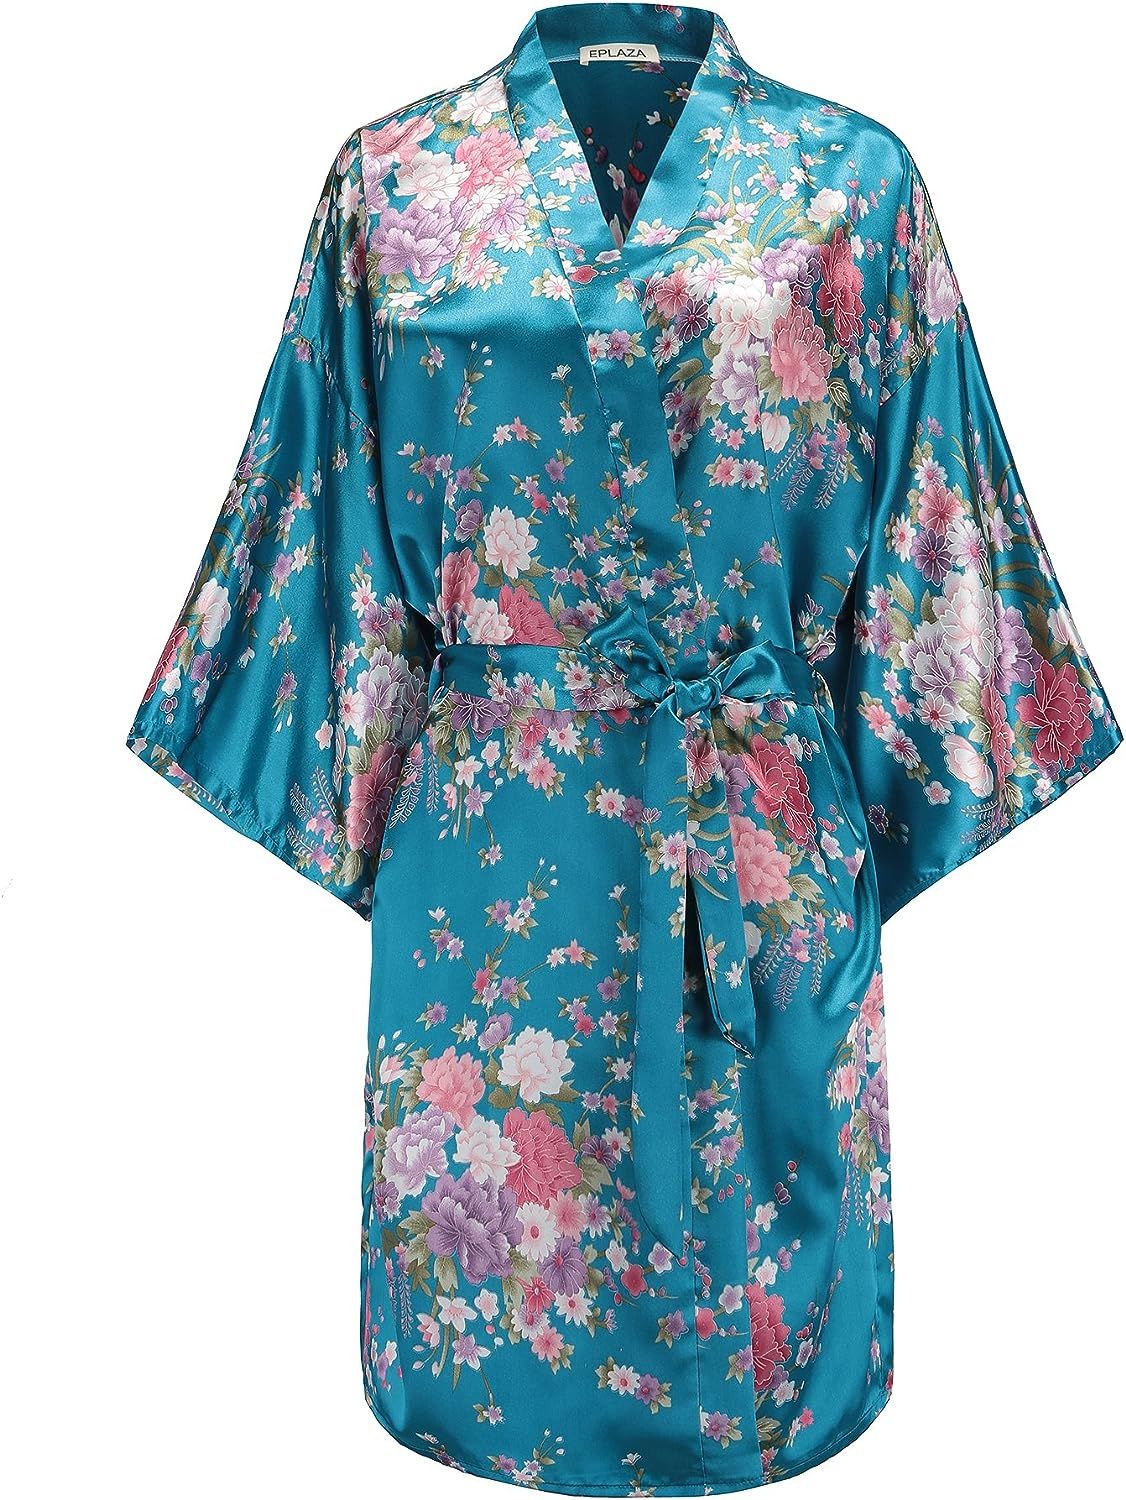 EPLAZA Women Floral Satin Robe Bridal Dressing Gown Wedding Bride Bridesmaid Kimono Sleepwear | Amazon (US)